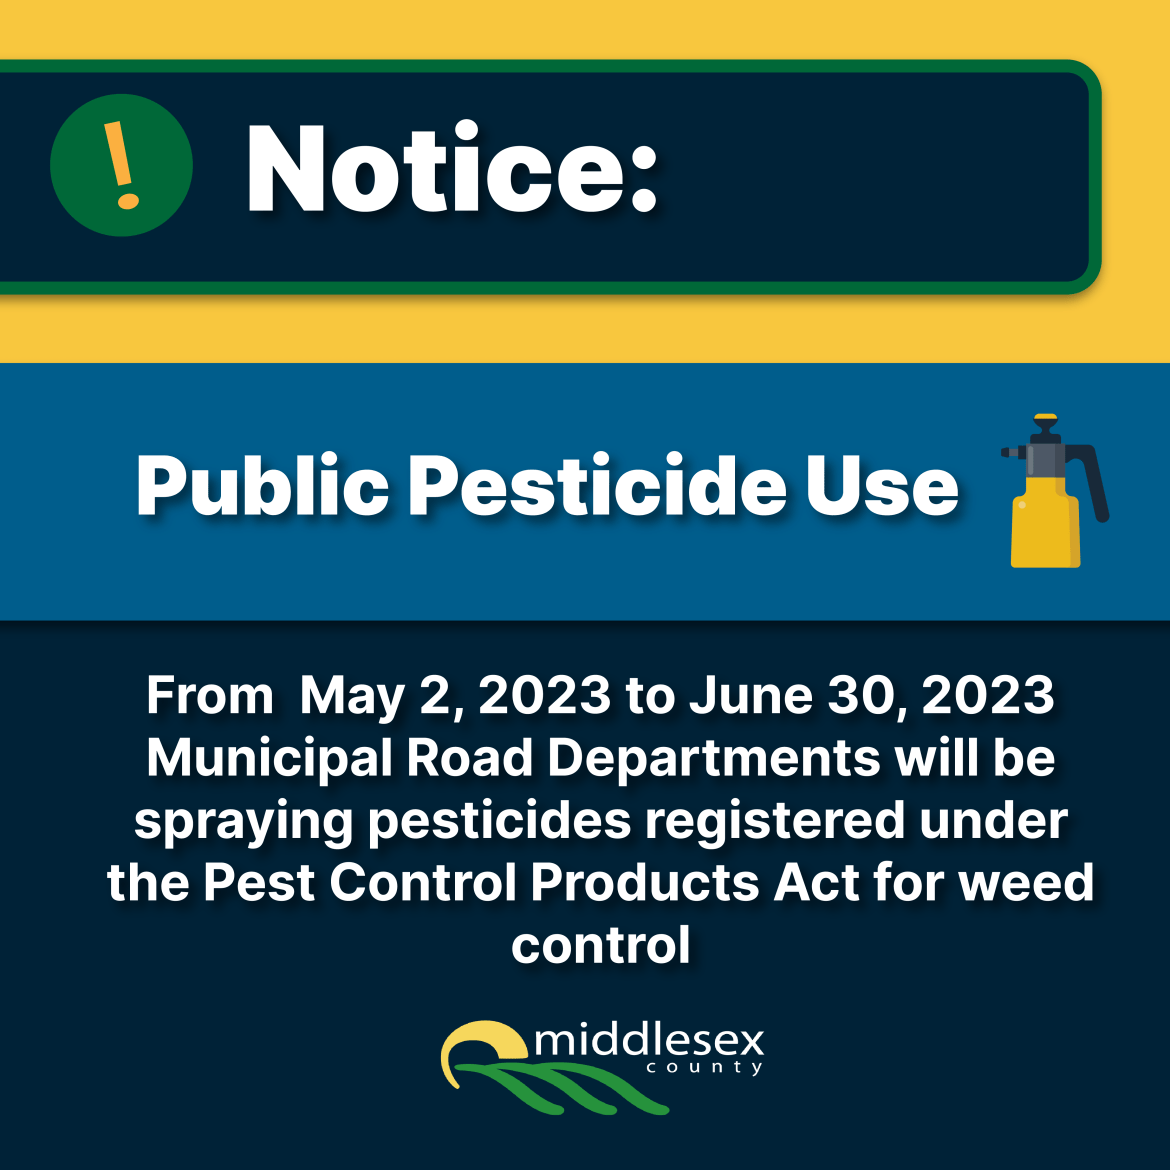 Public Pesticide Use 